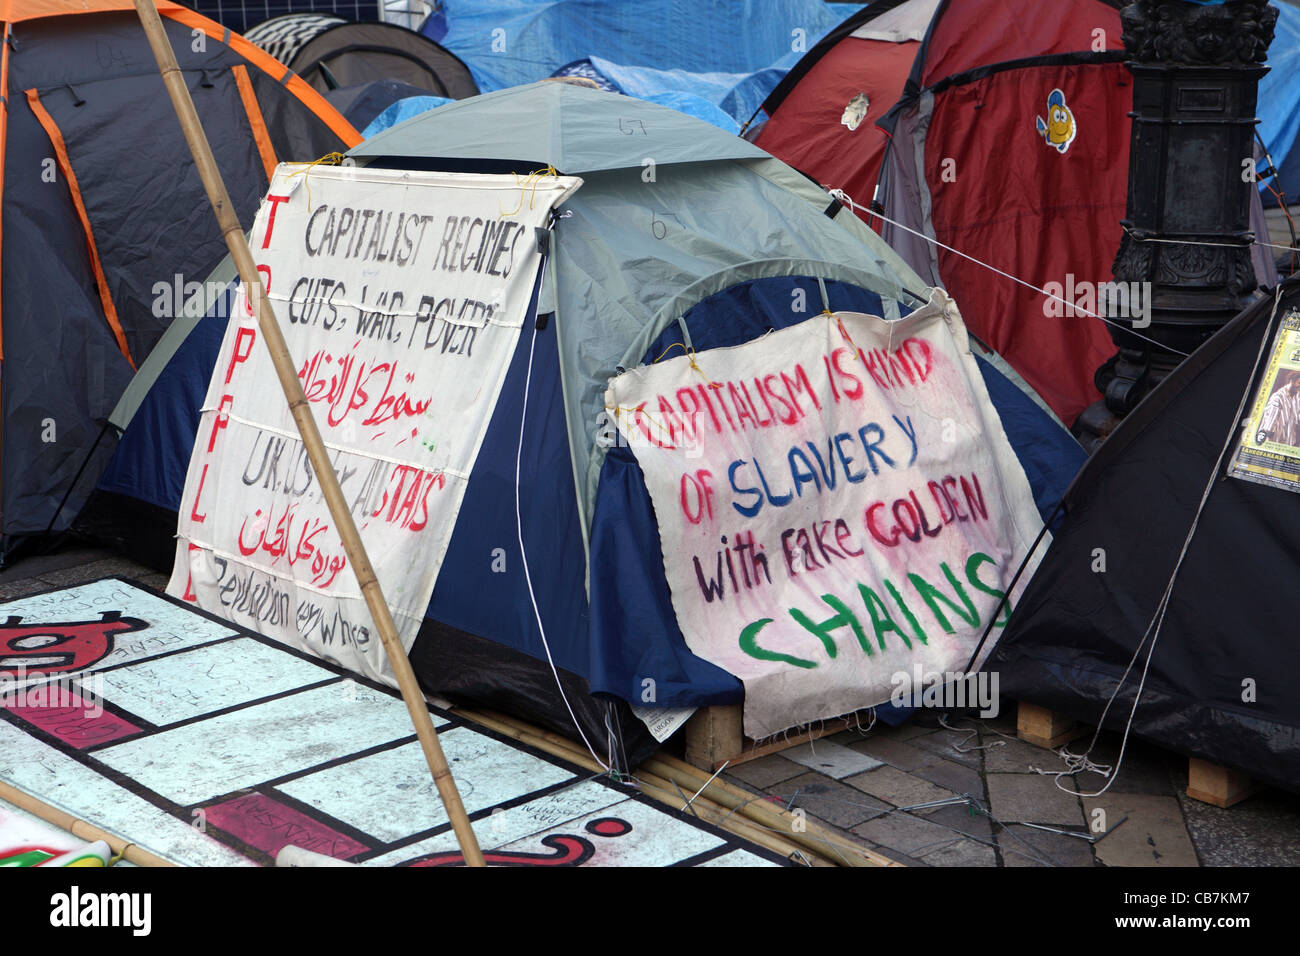 Image de l'une des nombreuses tentes à la protestation Occupy London St Paul's London, UK - slogans anti capitalisme Banque D'Images